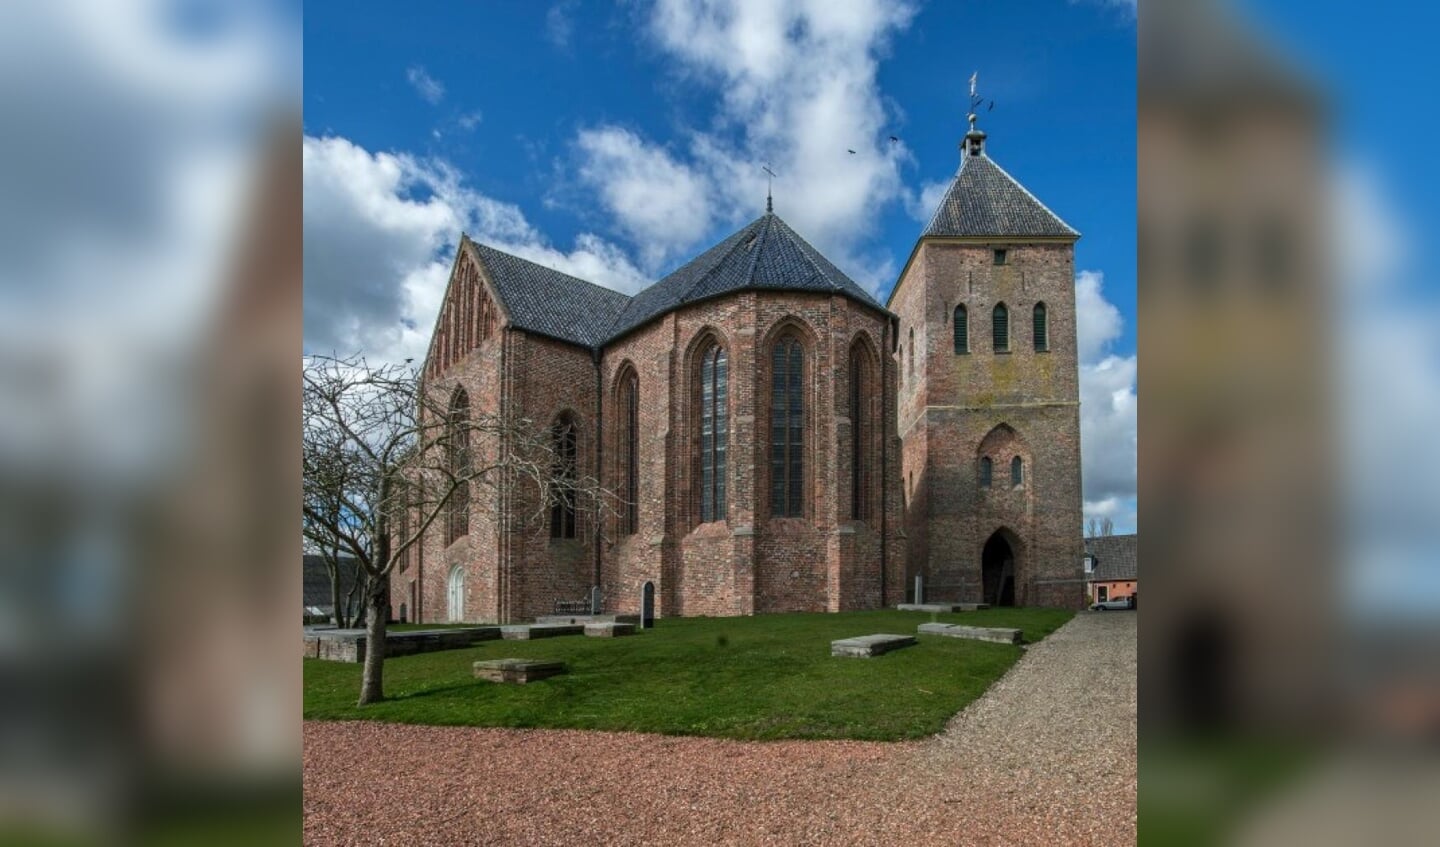 De fraaie kerk in Zeerijp.